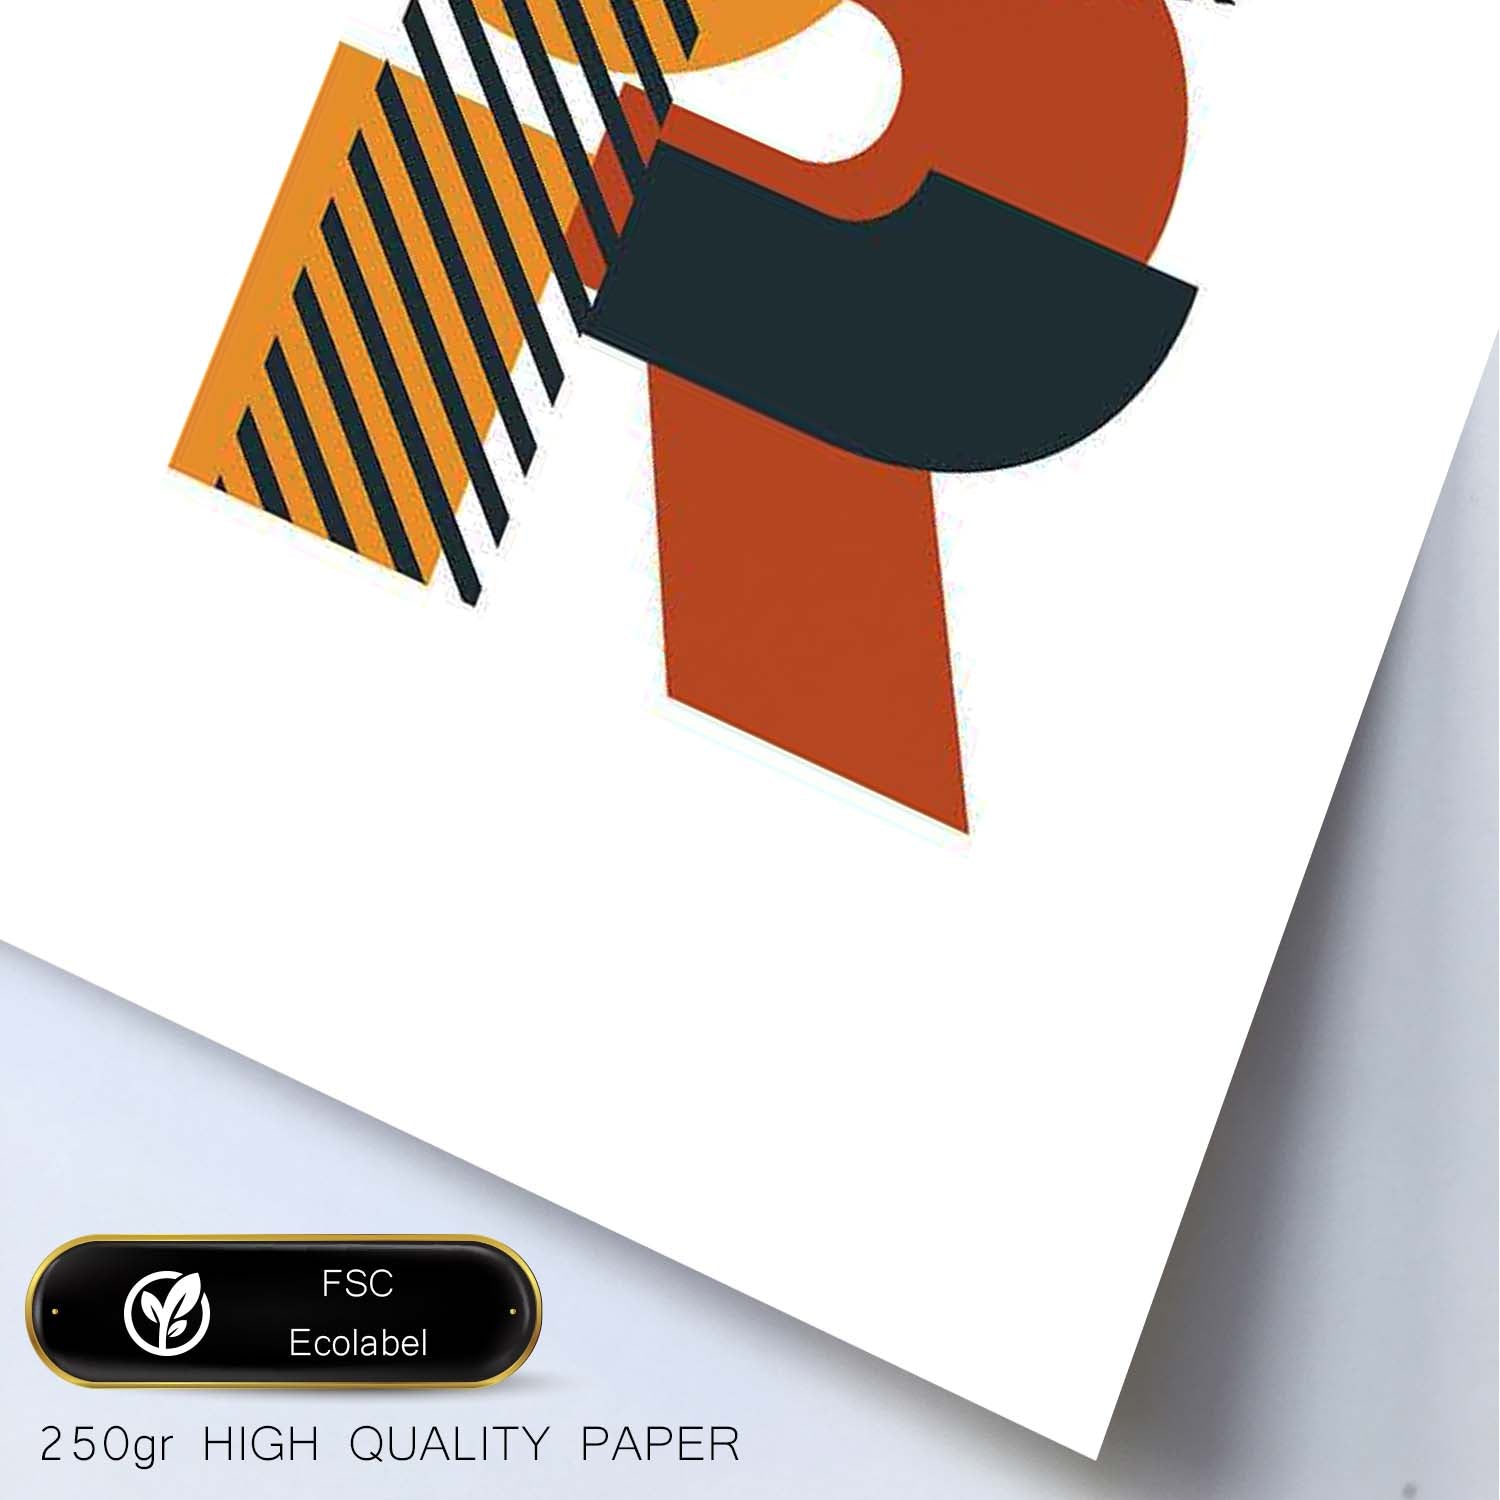 Poster de letra R. Lámina estilo Geometria con formas con imágenes del alfabeto.-Artwork-Nacnic-Nacnic Estudio SL